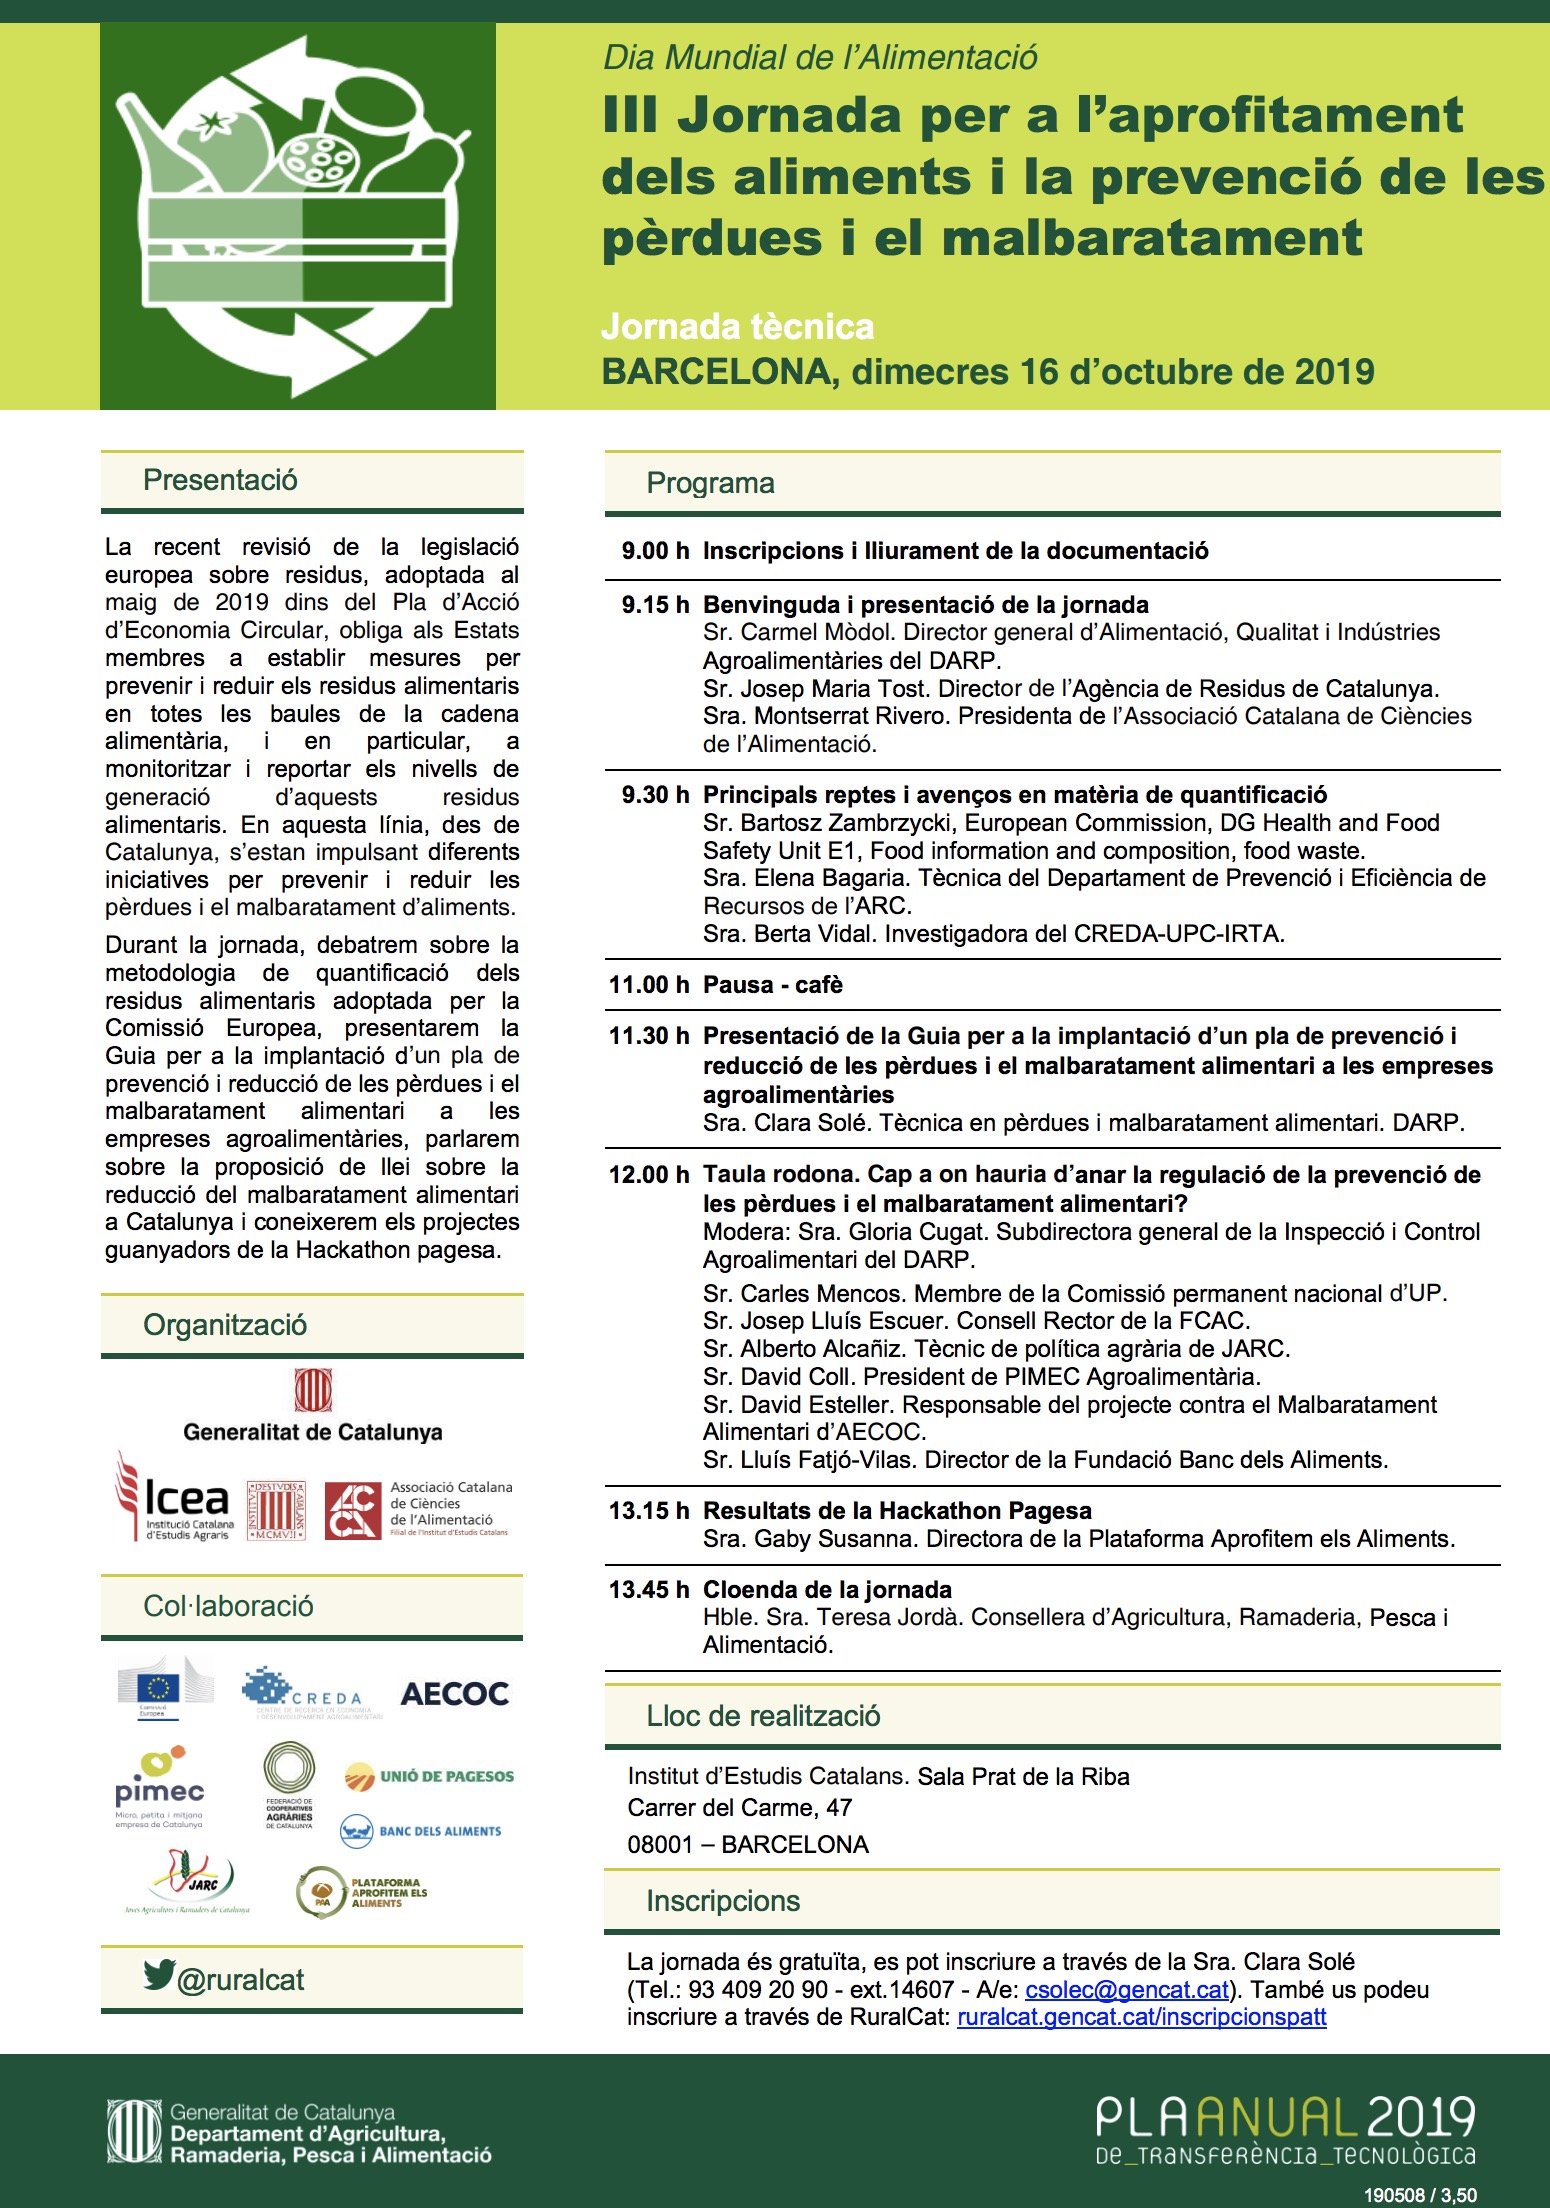 III Jornada per a l’Aprofitament dels Aliments i la reducció de les Pèrdues i el Malbaratament Alimentari. Cap a un Sistema alimentari sostenible (16 octubre, Barcelona)IEC